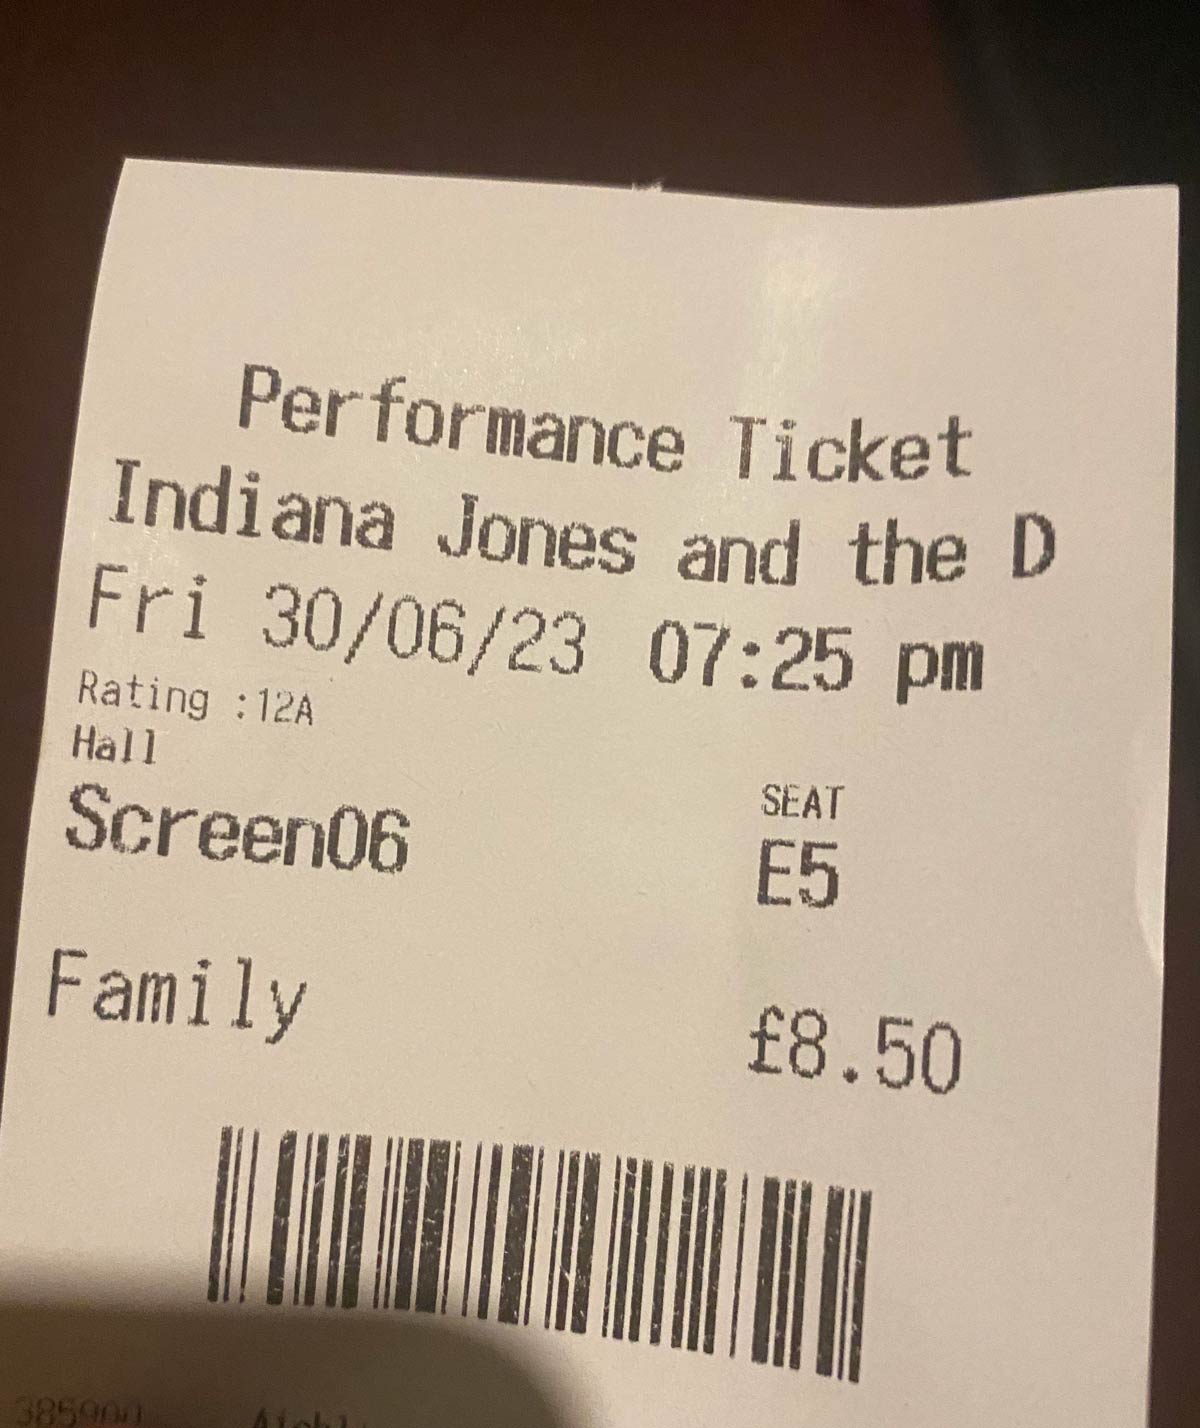 I may have chosen the wrong cinema